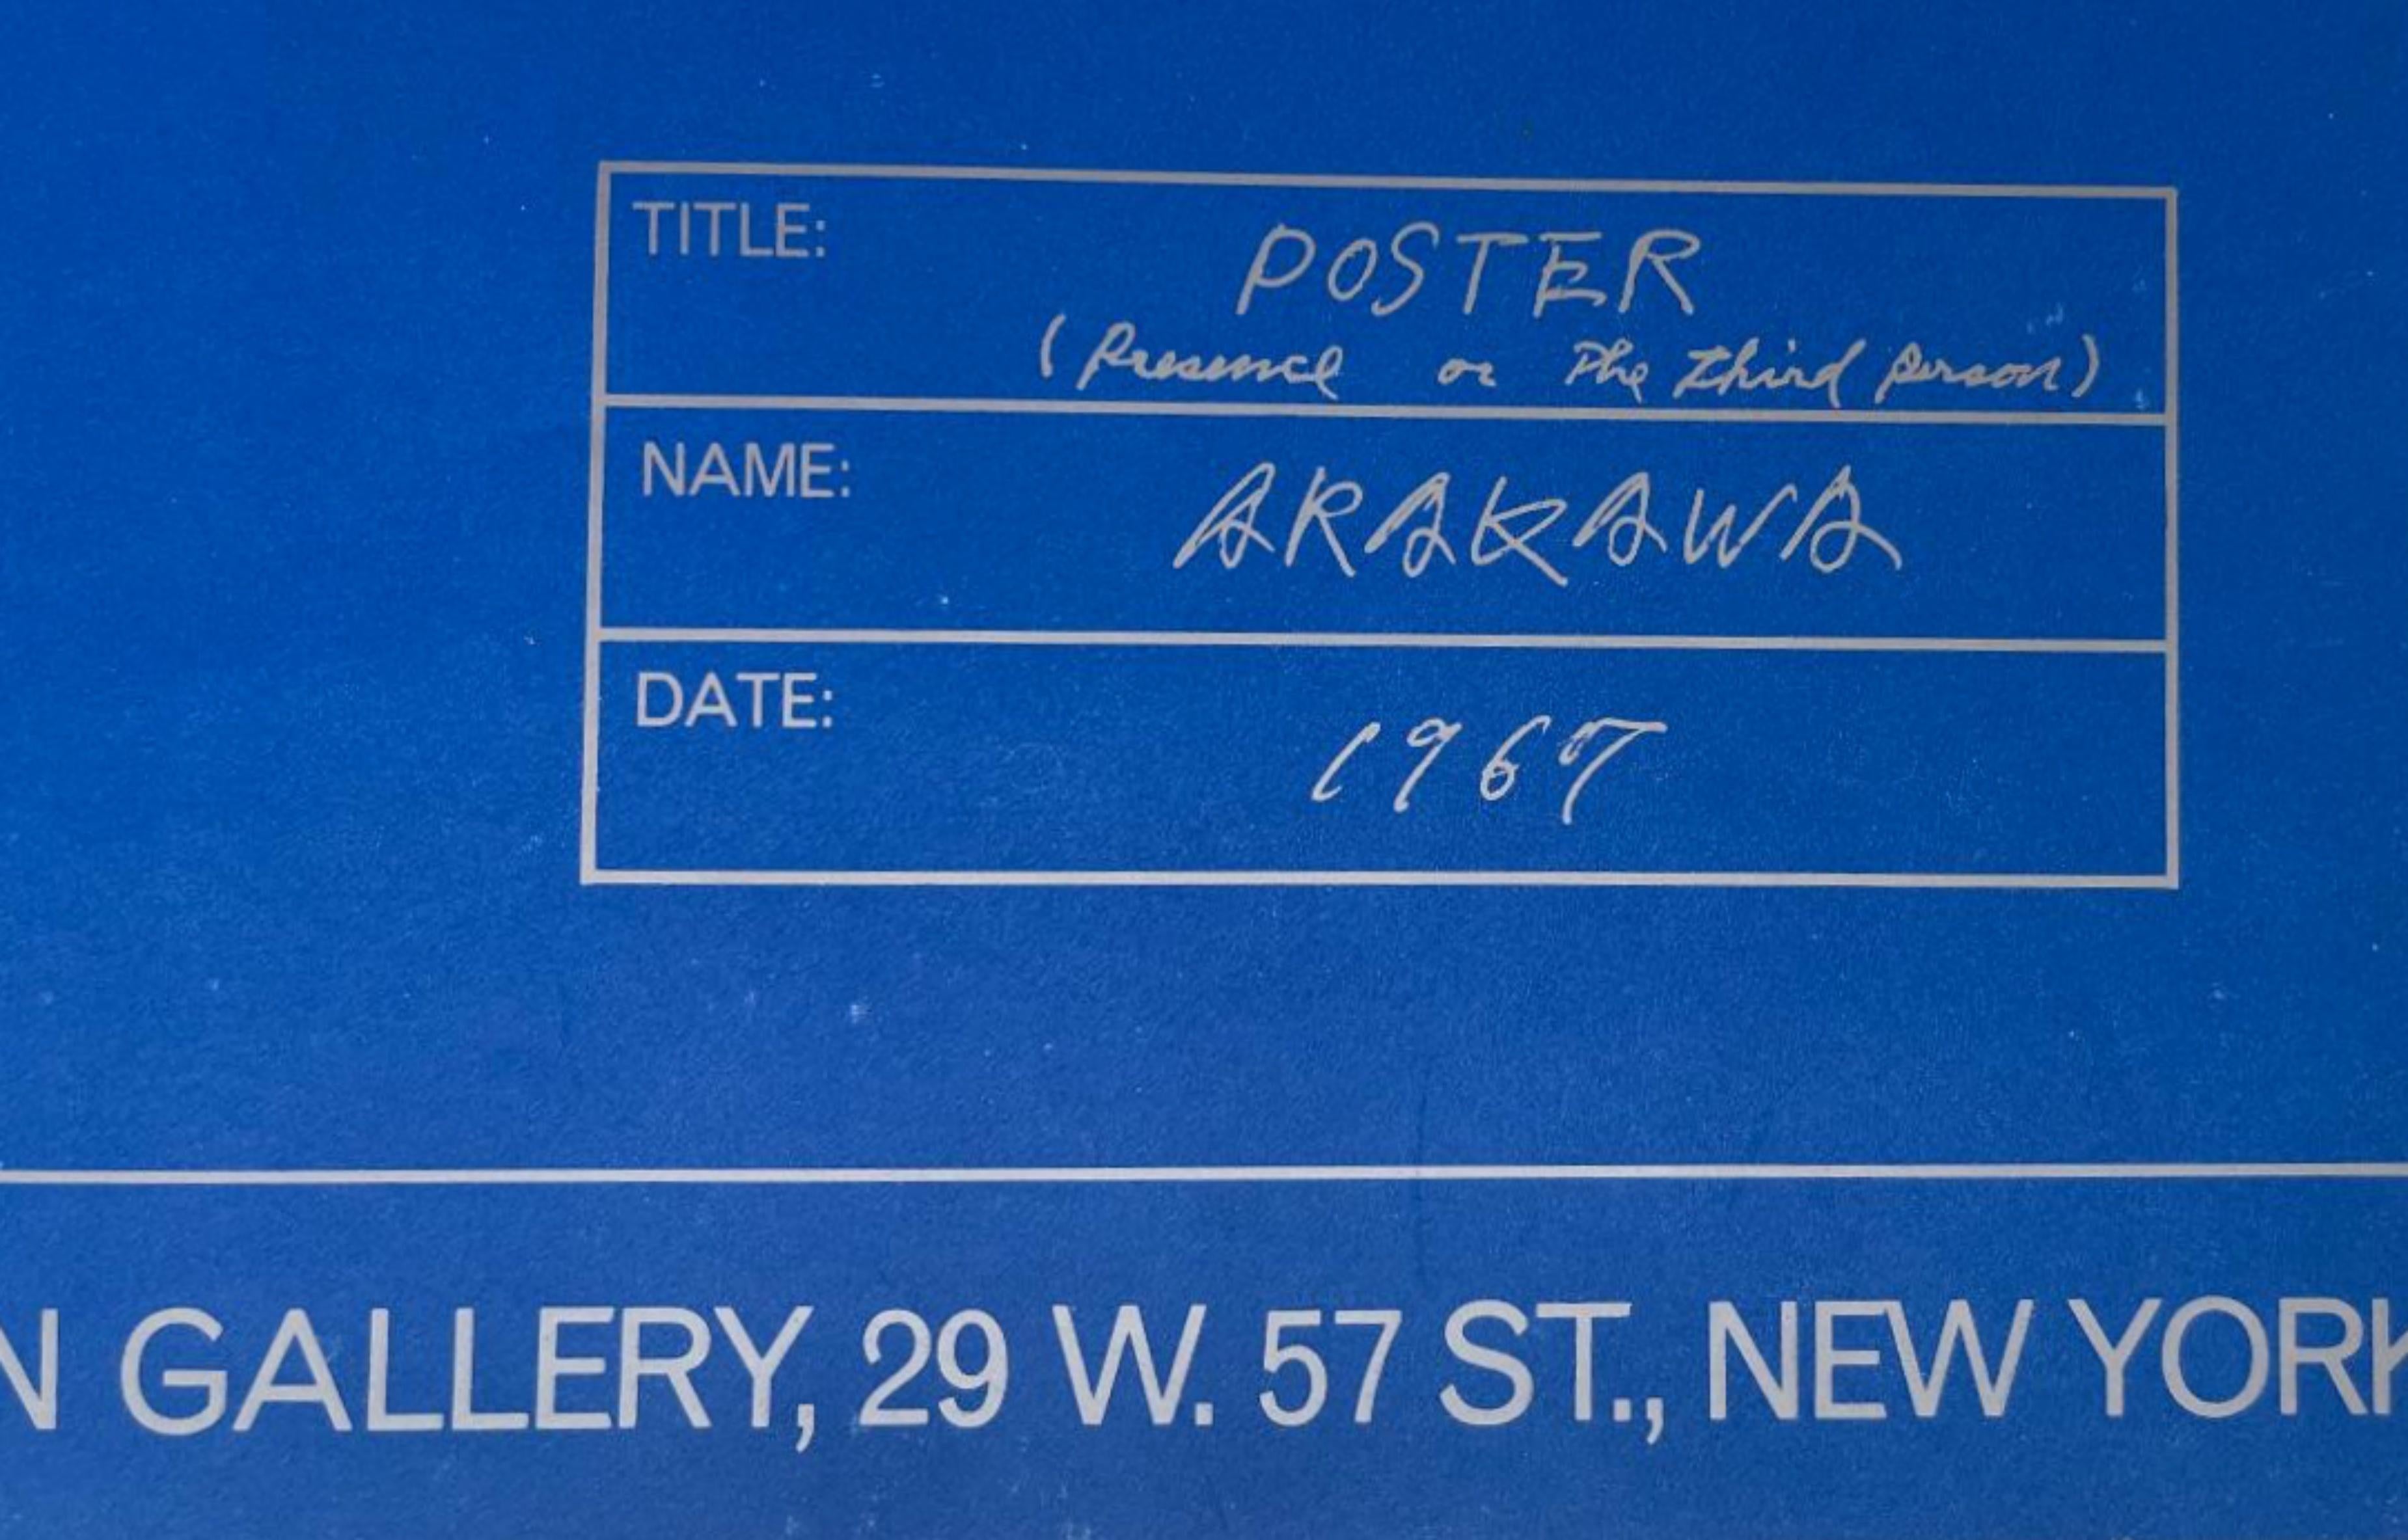 Shusaku Arakawa
Historisches Plakat der Dwan Gallery: Die Anwesenheit oder die dritte Person, 1967
Offsetlithografie-Poster
30 x 22 Zoll
Ungerahmt
Selten gefundenes, begehrtes Plakat von 1967 aus der legendären Dwan Gallery.
2016 zeigte die National